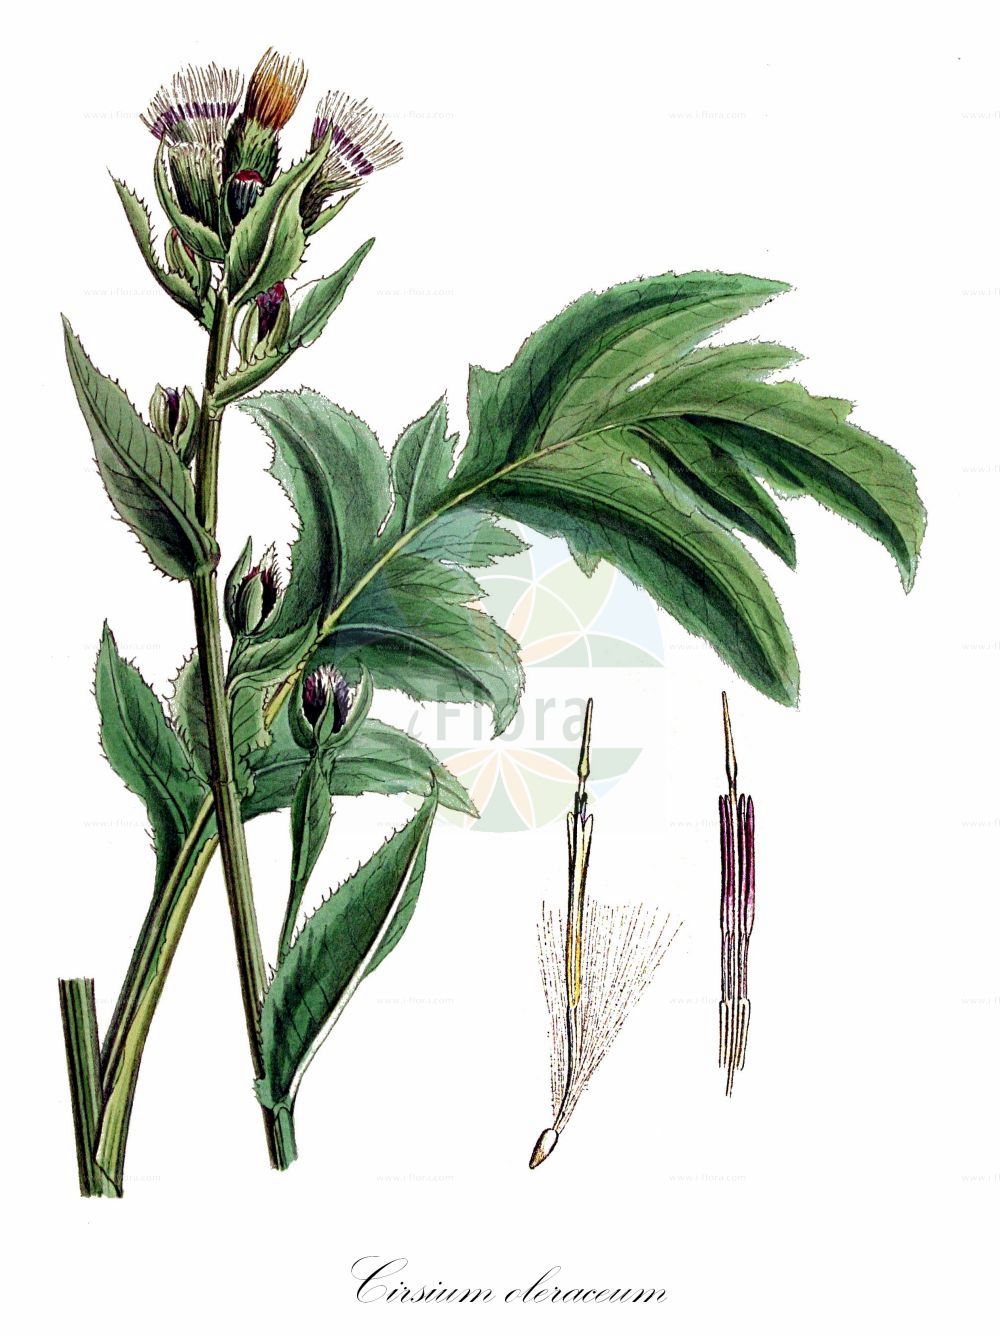 Historische Abbildung von Cirsium oleraceum (Kohl-Kratzdistel - Cabbage Thistle). Das Bild zeigt Blatt, Bluete, Frucht und Same. ---- Historical Drawing of Cirsium oleraceum (Kohl-Kratzdistel - Cabbage Thistle). The image is showing leaf, flower, fruit and seed.(Cirsium oleraceum,Kohl-Kratzdistel,Cabbage Thistle,Cirsium oleraceum,Cnicus oleraceus,Kohl-Kratzdistel,Cabbage Thistle,Meadow Distaff,Water Thistle,Cirsium,Kratzdistel,Thistle,Asteraceae,Korbblütengewächse,Daisy family,Blatt,Bluete,Frucht,Same,leaf,flower,fruit,seed,Kops (1800-1934))